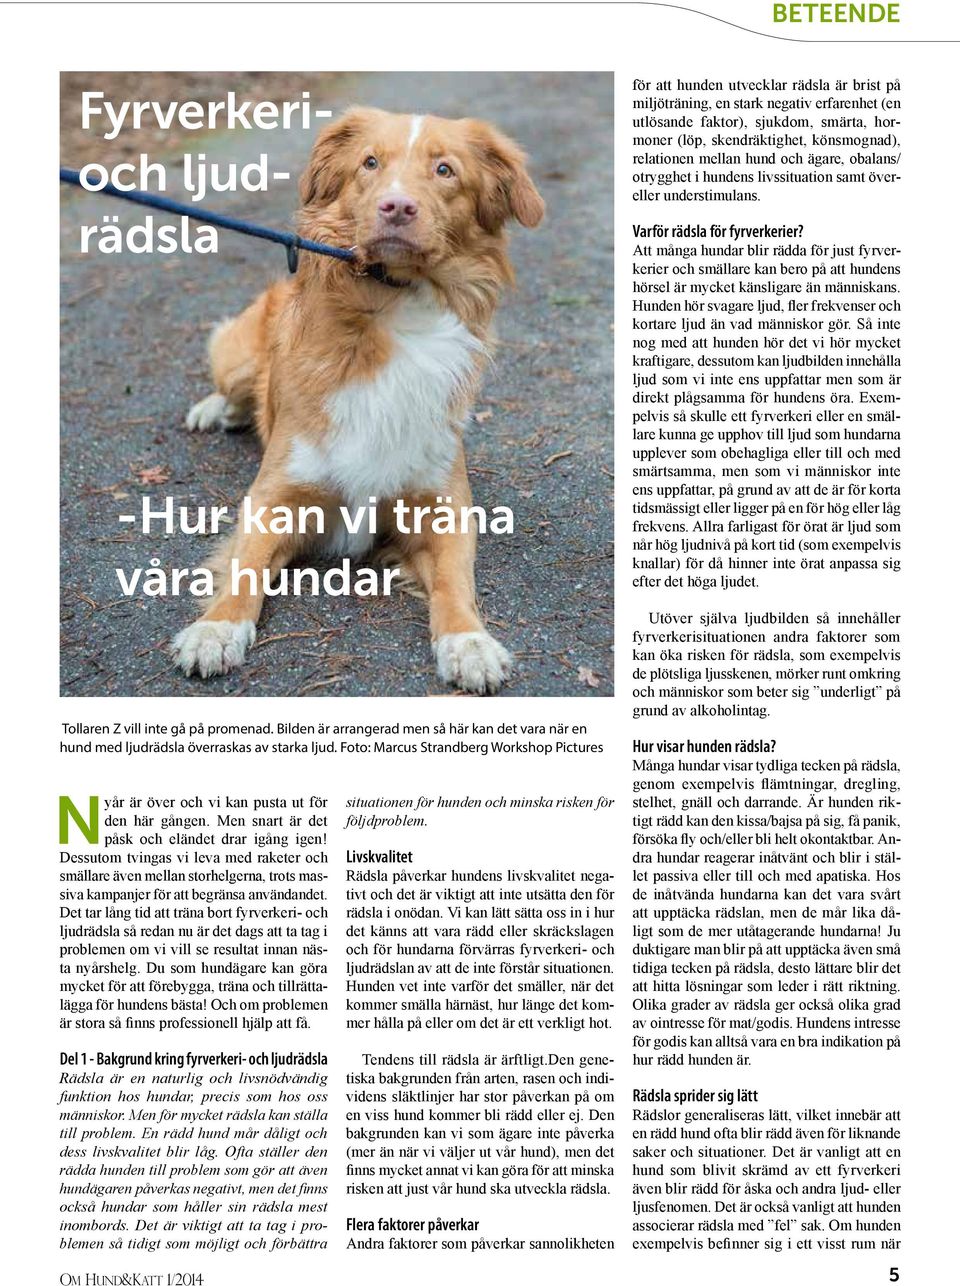 situationen för hunden och minska risken för följdproblem. - PDF ...